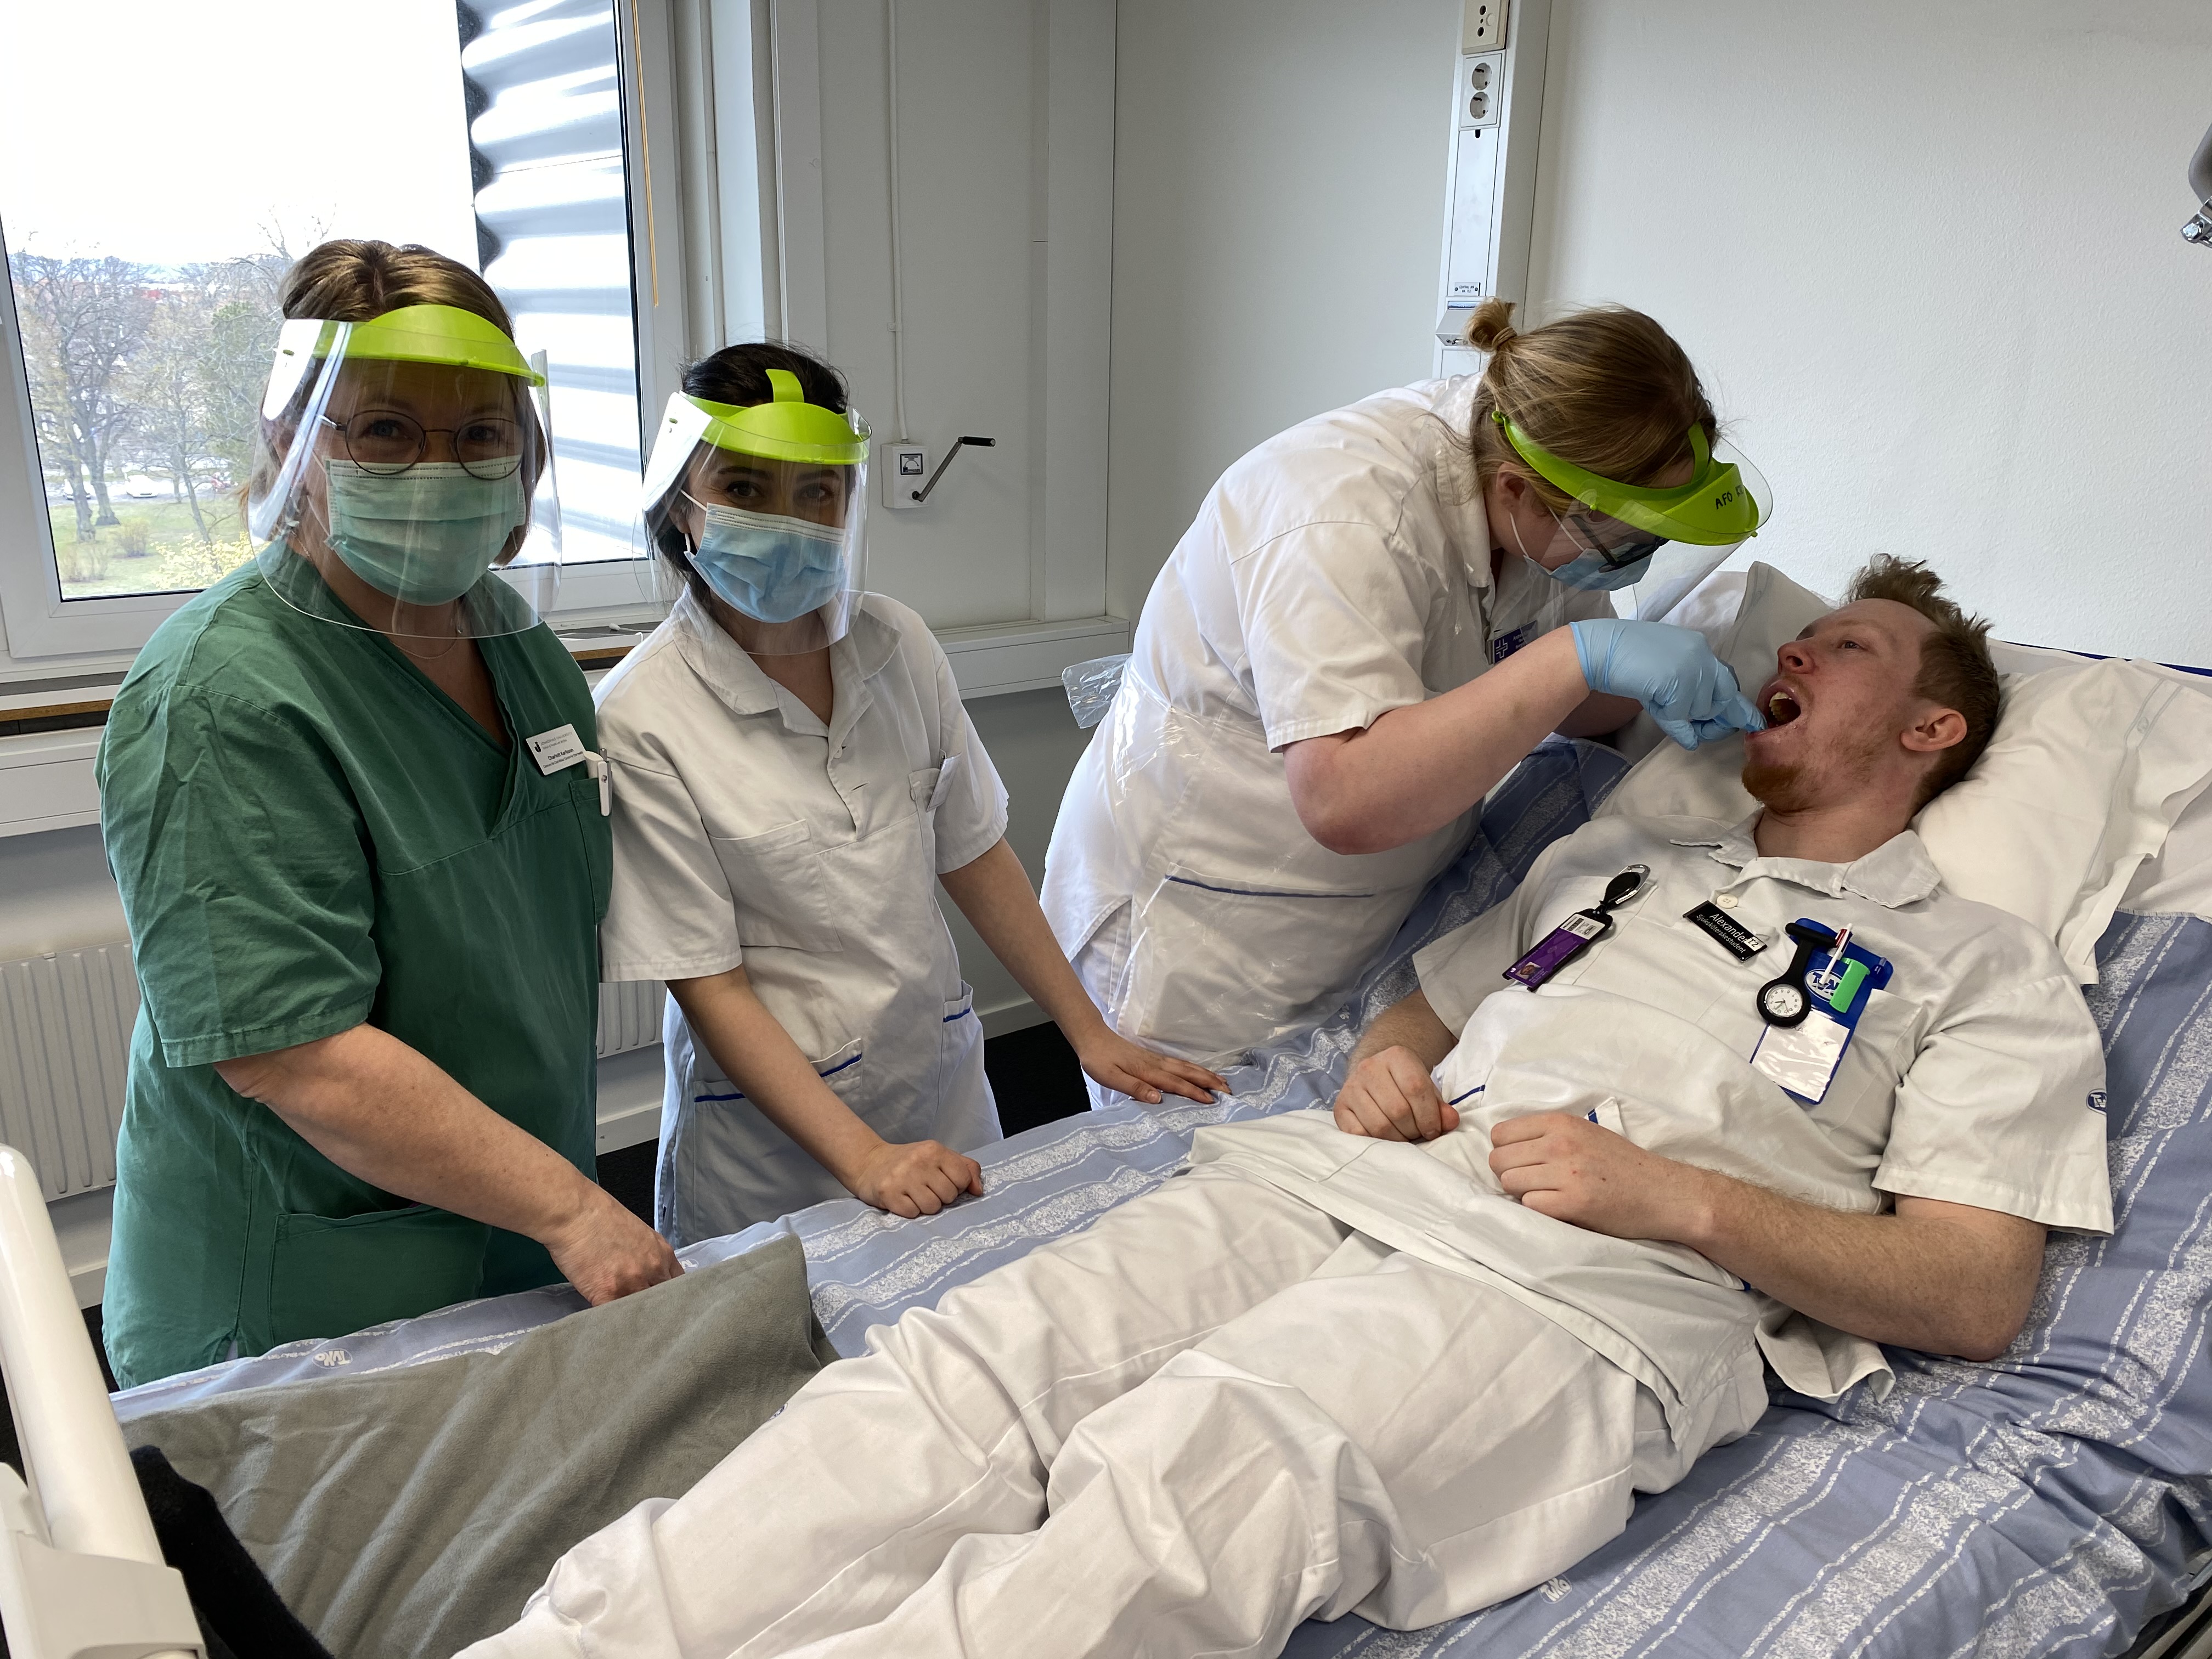 Undervisningsmoment där tre studenter syns tillsammans med en lärare, en av studenterna ligger i en sjuksäng och får tänderna borstade av en annan. 